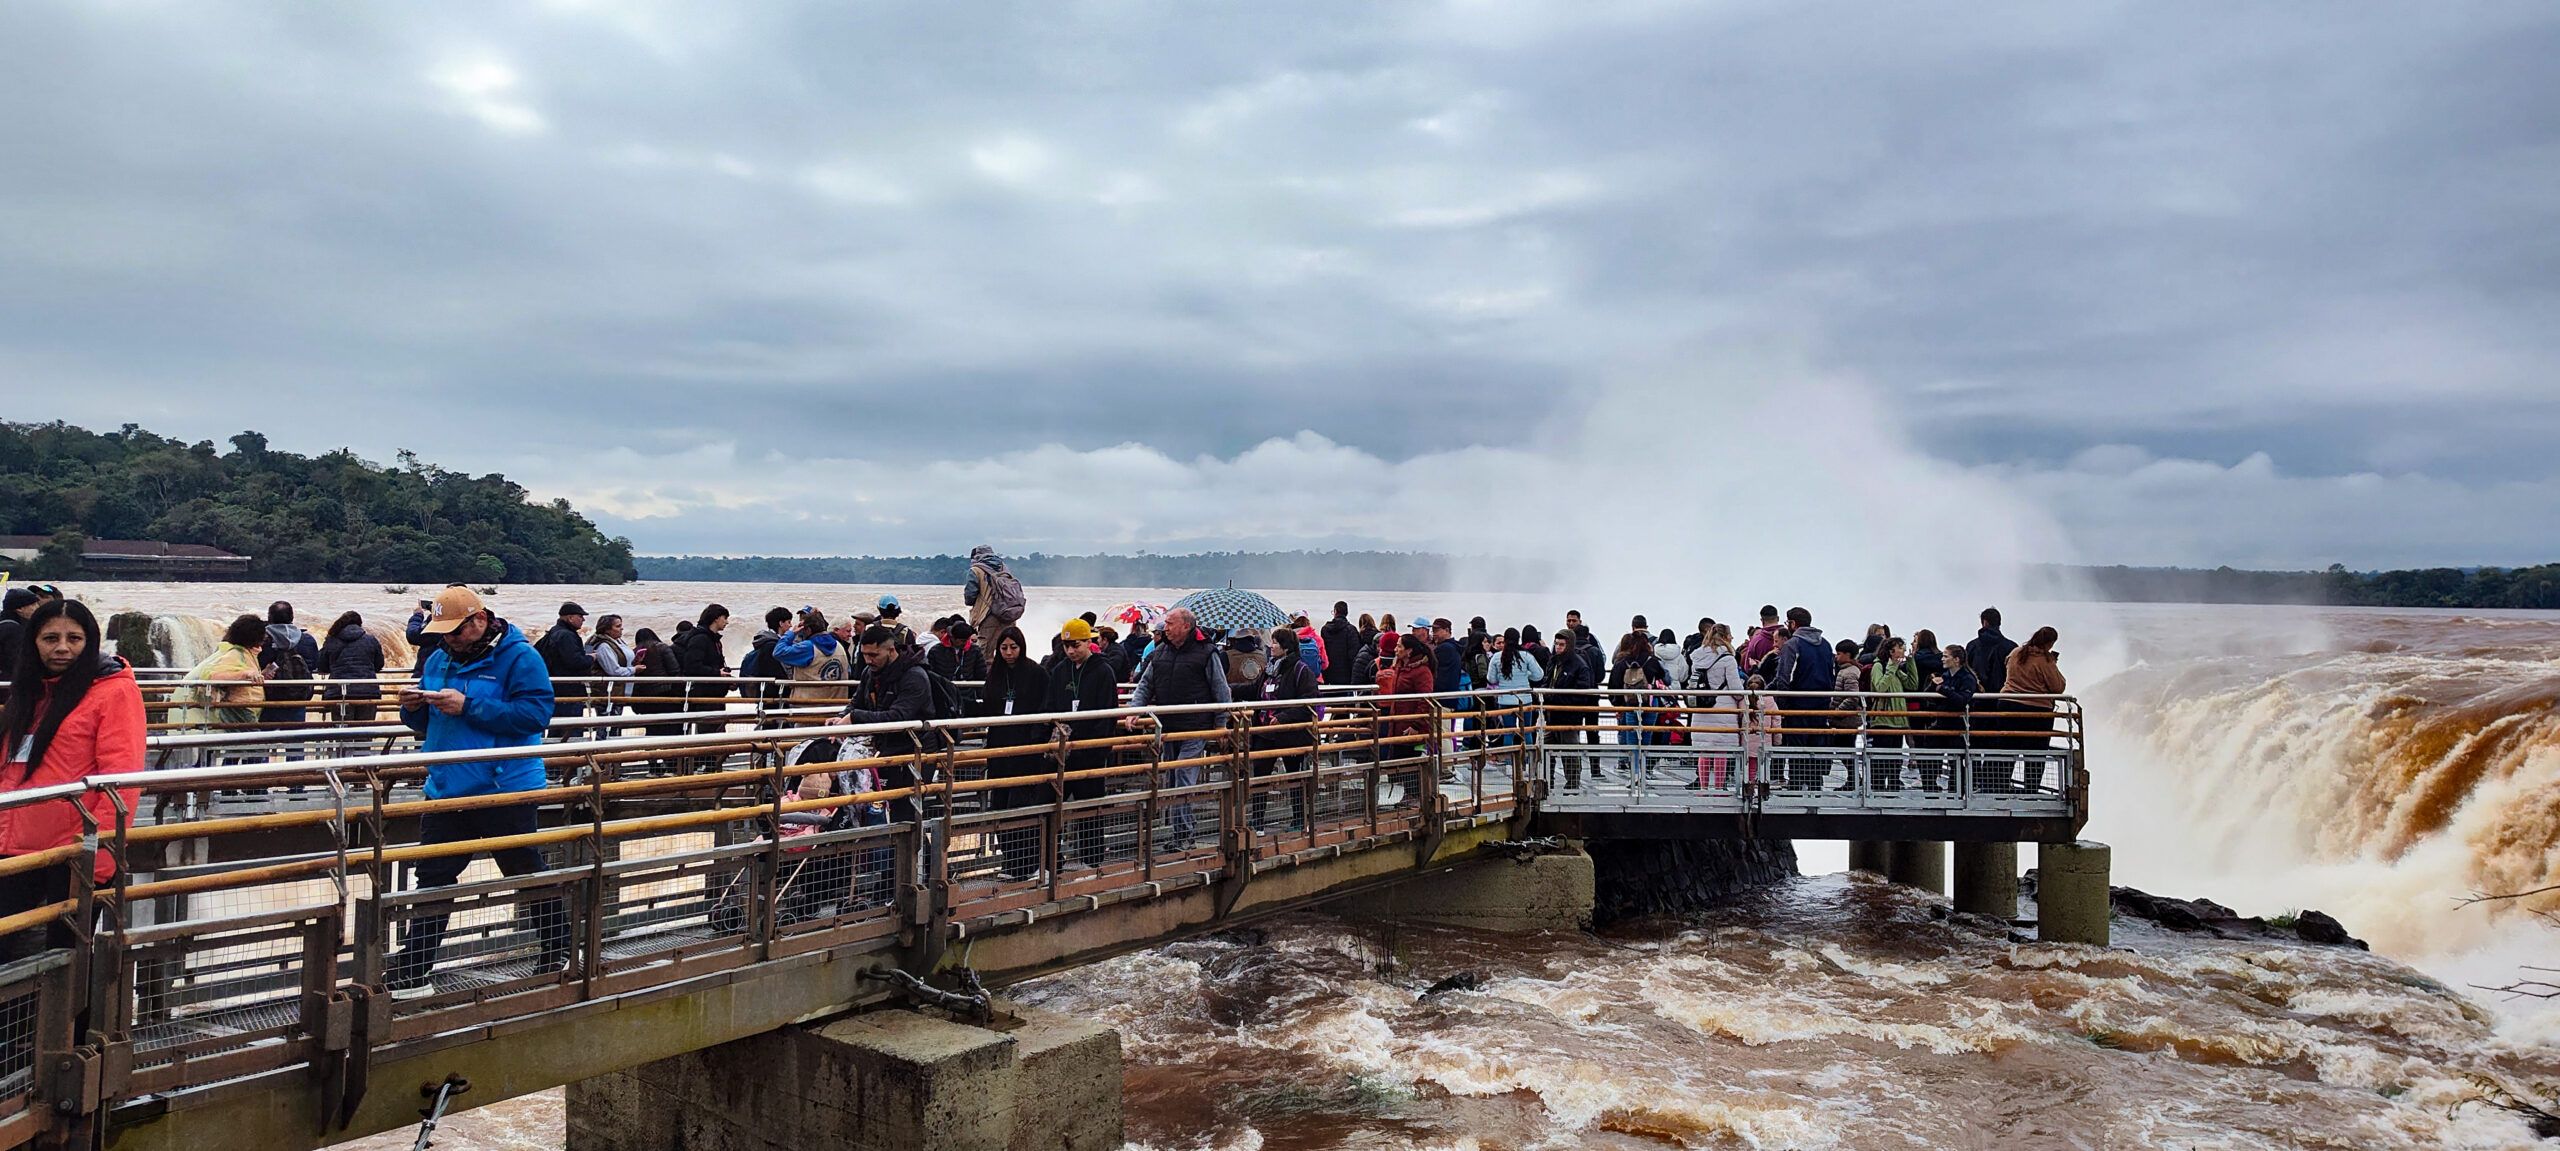 Intensa afluencia de visitantes en cataratas, ingresaron más de 10 mil turistas este miércoles